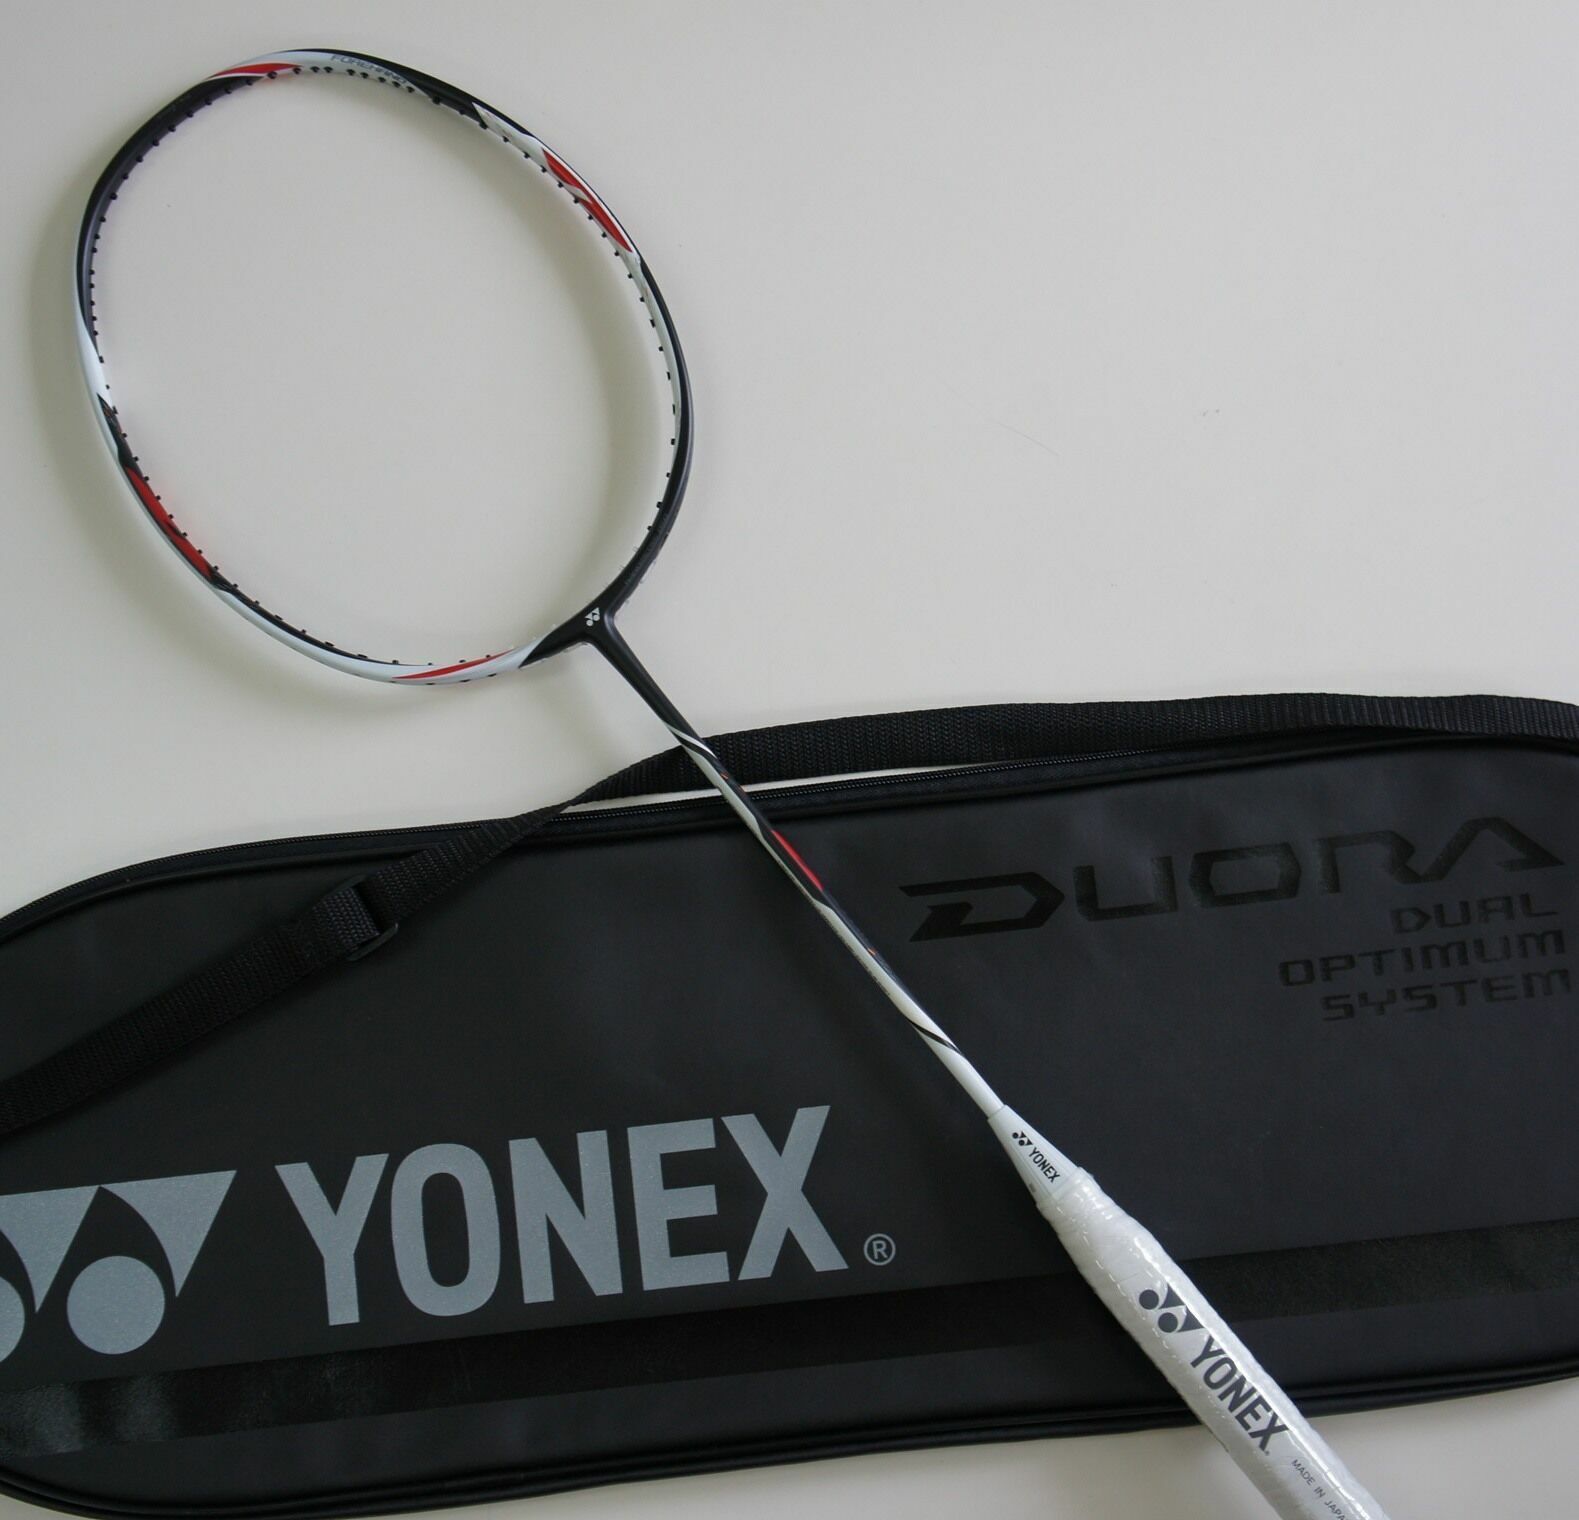 YONEX Duora Z-Strike Badminton Racquet Duo-ZS 3UG5 Choice of String